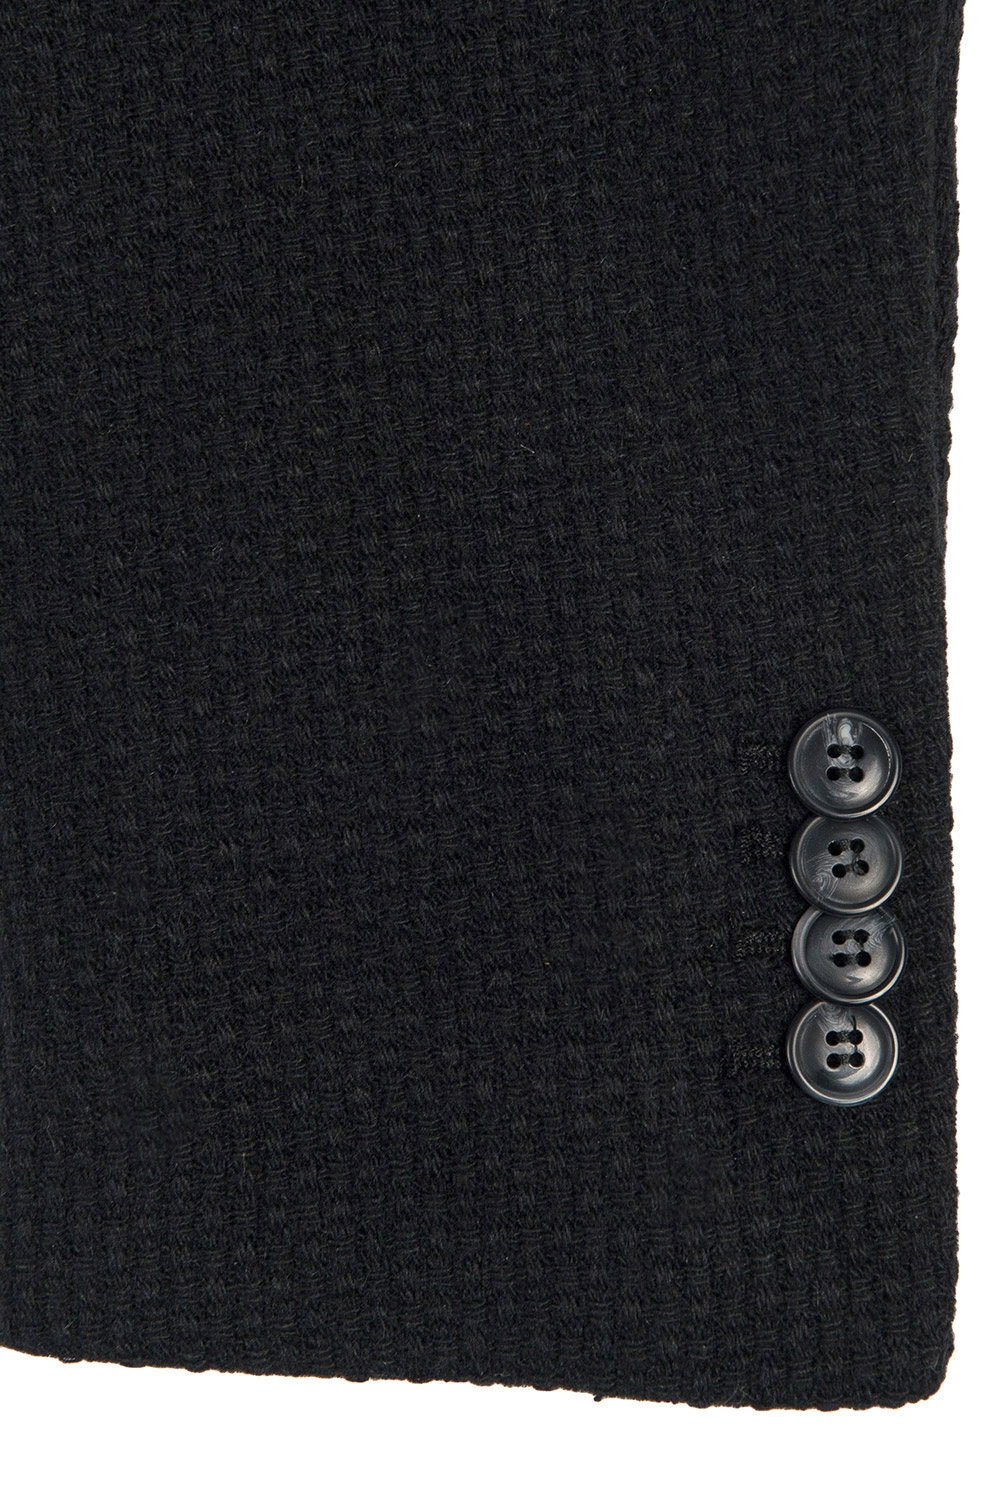 Palton negru uni 3